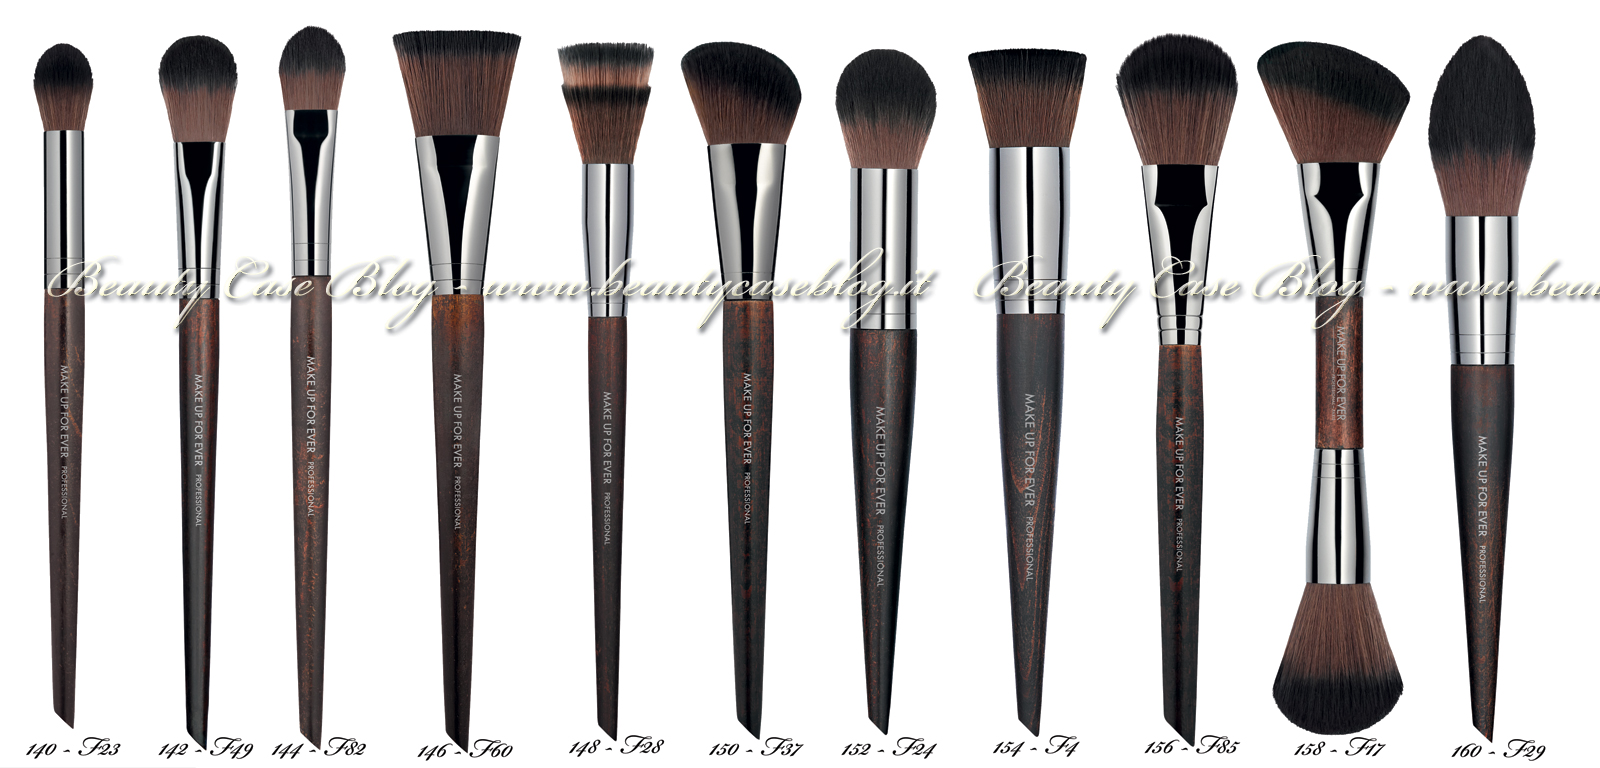 Make Up For Ever - 76 nuovi pennelli: vediamoli uno ad uno - Beauty Case  Blog - Beauty blog italiano su make-up e bellezza